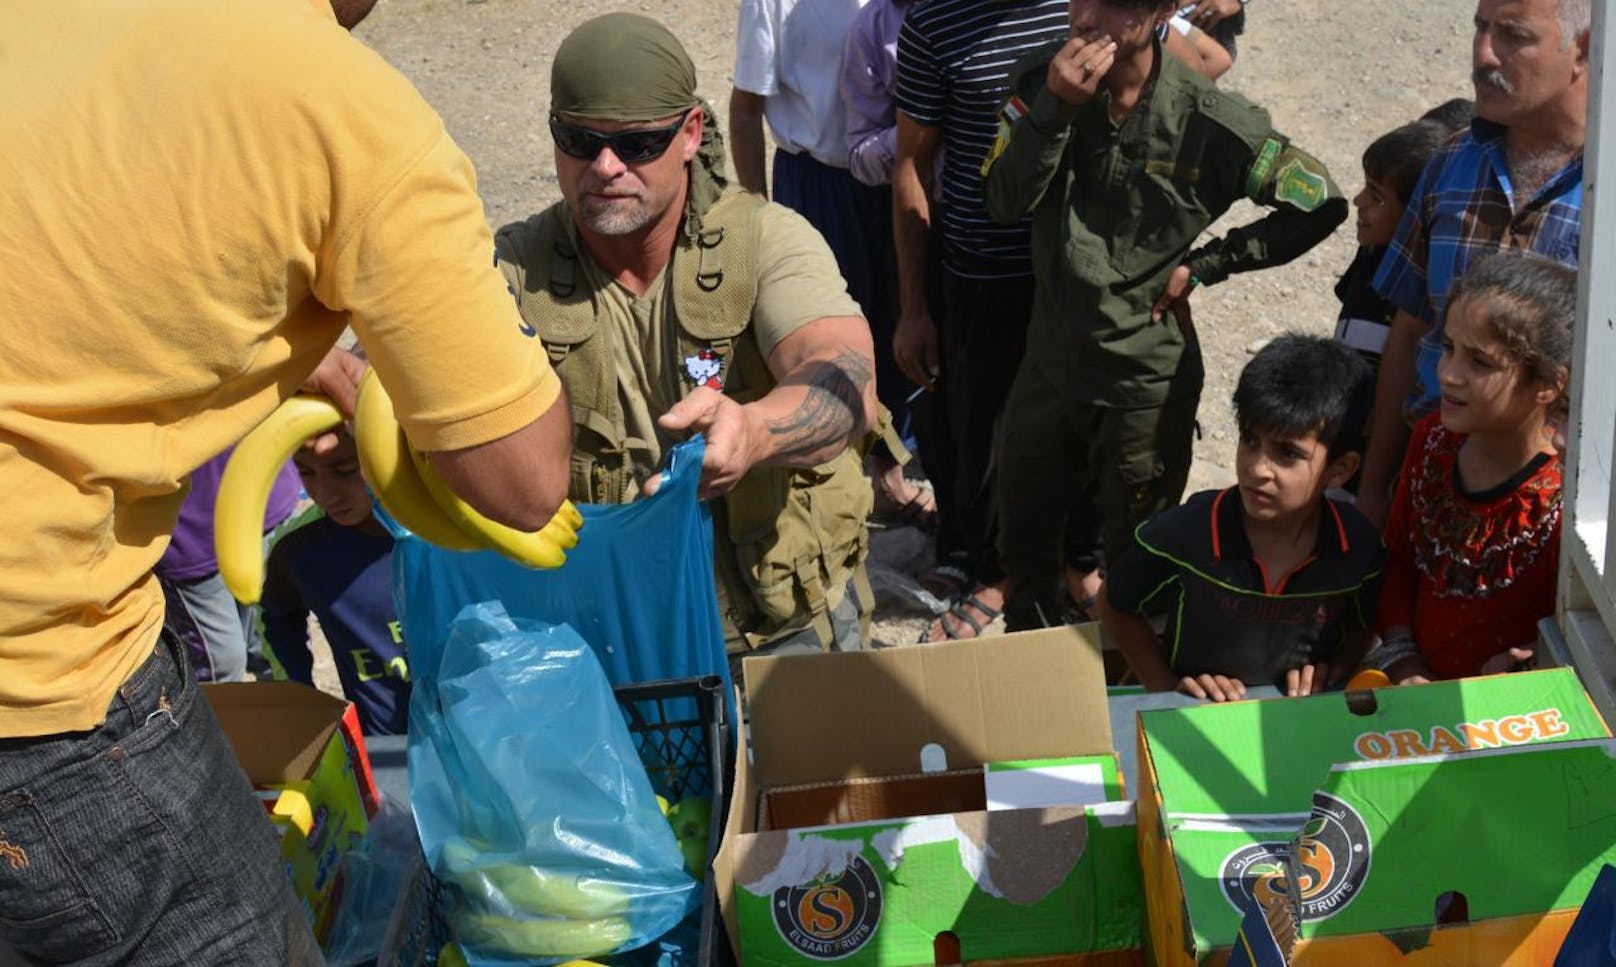 Georg Jachan kümmert sich in Mossul um die Kleinsten der Kleinen, verteilt Lebensmittel, Wasser und Hygieneartikel. Die Stadt Mossul im Irak zählt derzeit zu den am härtesten umkämpften Kriegsgebieten.